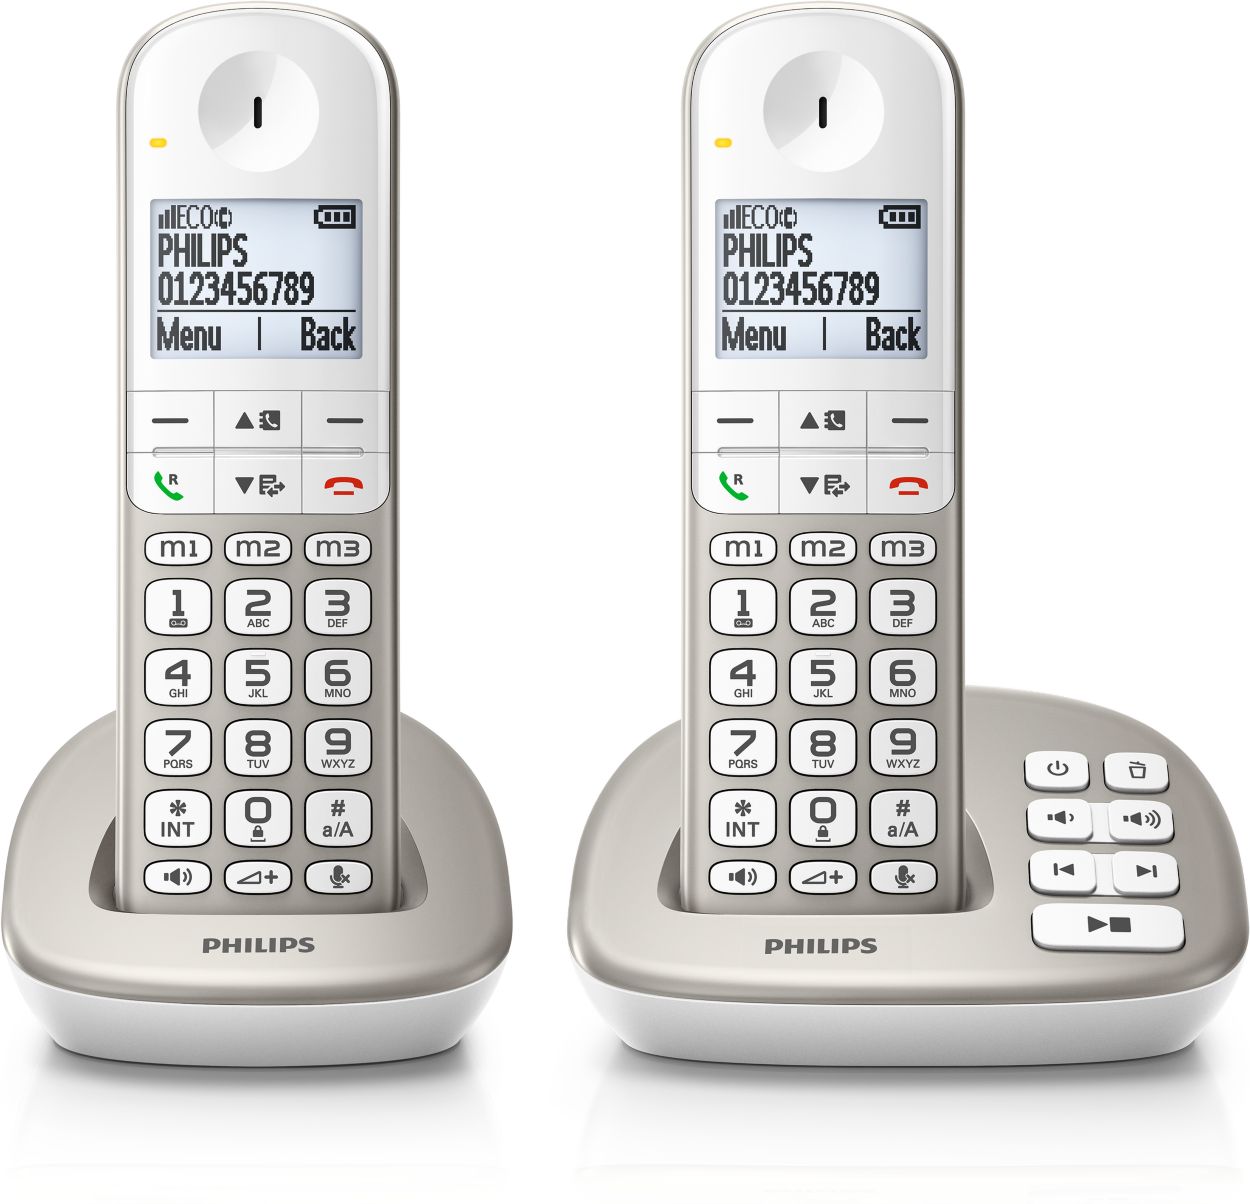 SoClear Téléphone fixe sans fil avec répondeur XL3951S/22